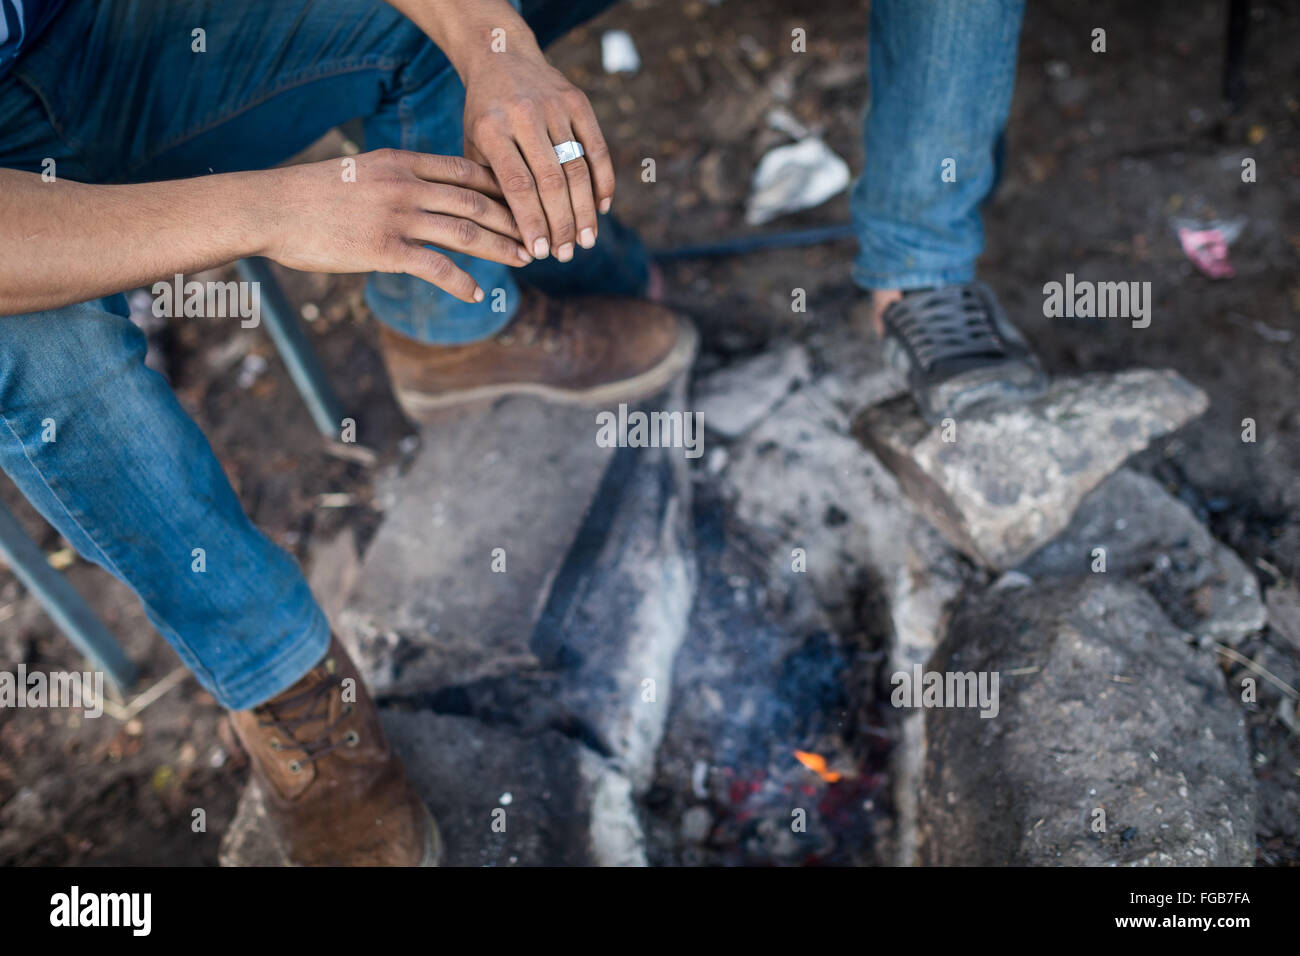 Les mains d'un réfugié kurde comme il se réchauffe-les sur un feu en sa tente dans le camp de réfugiés de la jungle à Calais. Banque D'Images